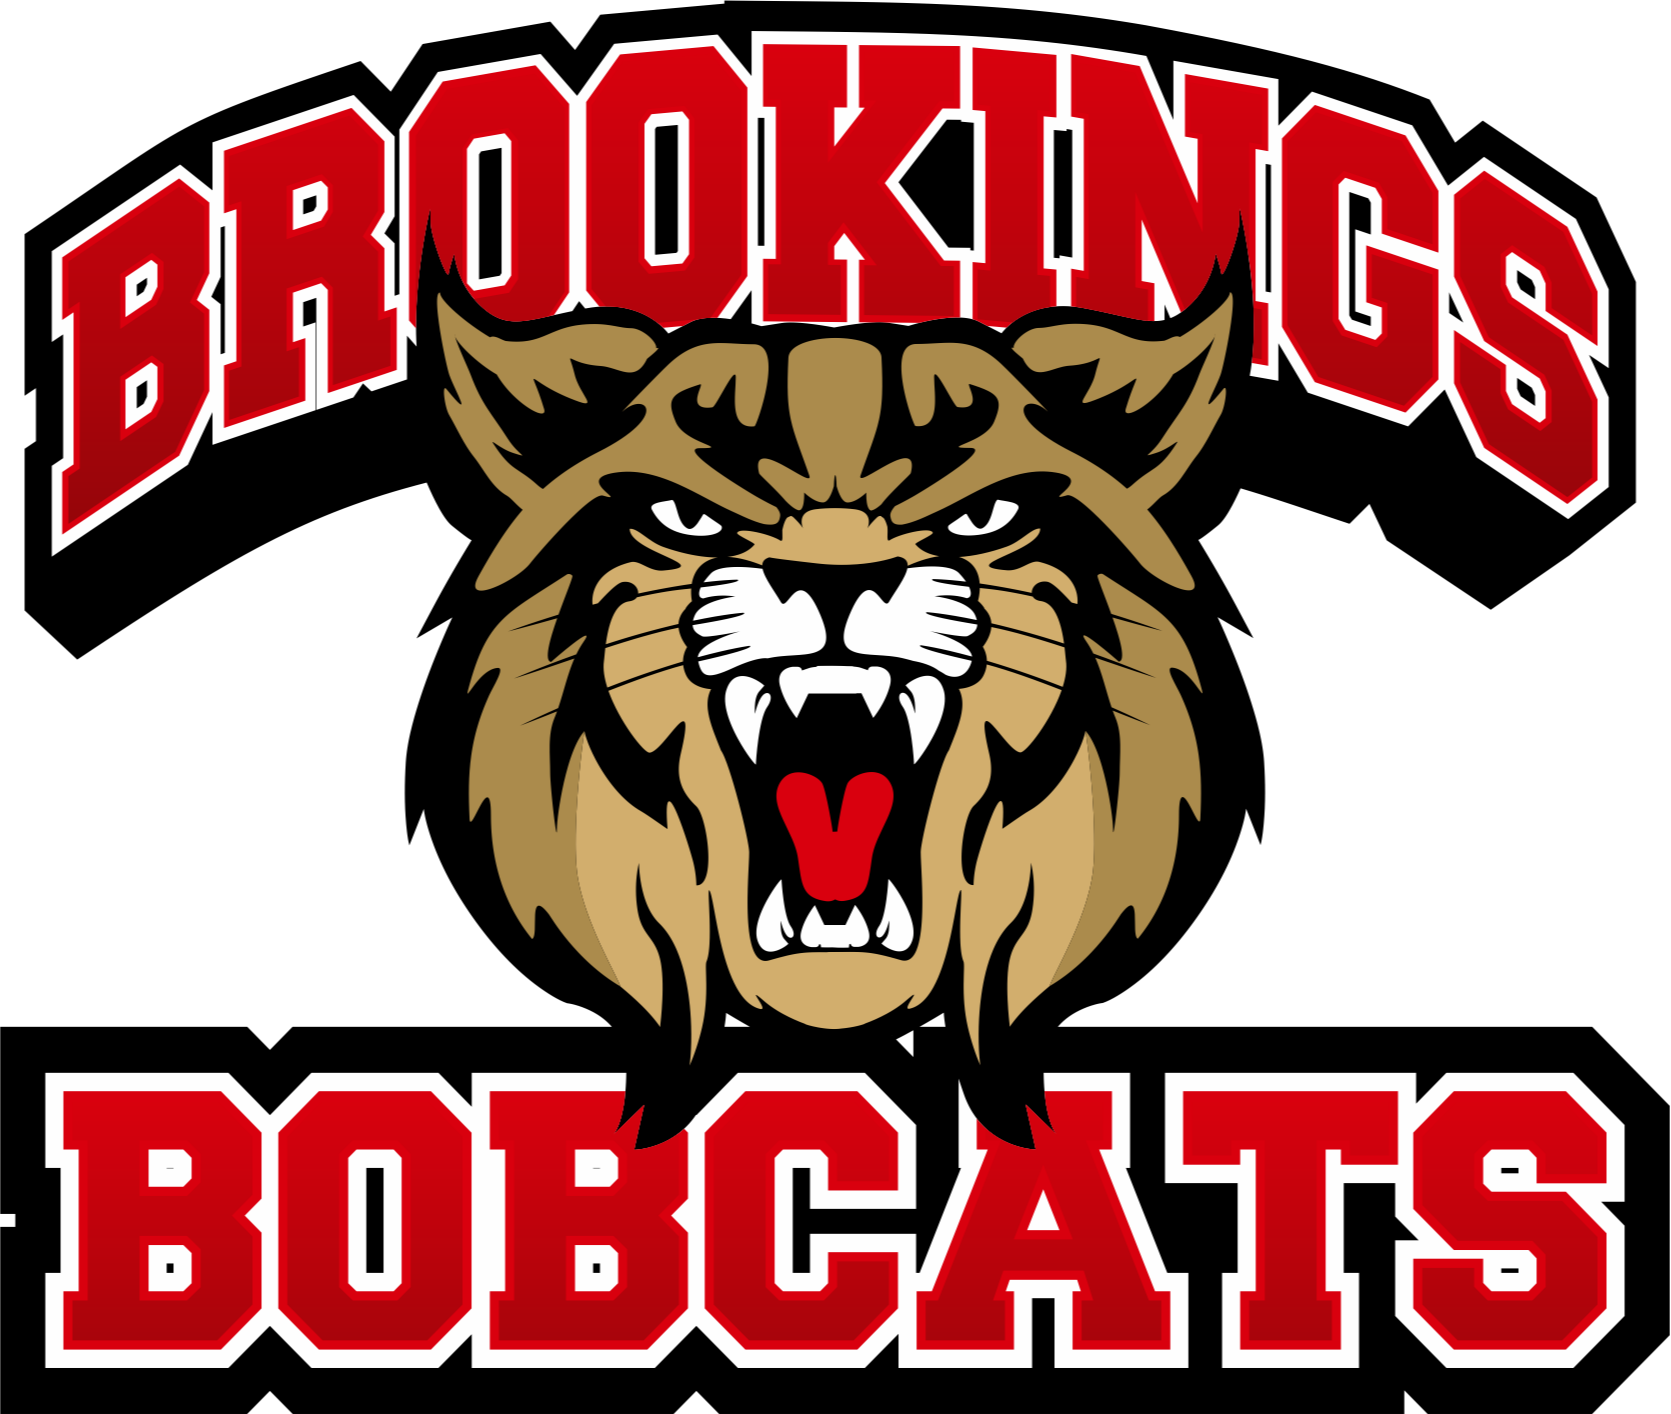 brookings logo